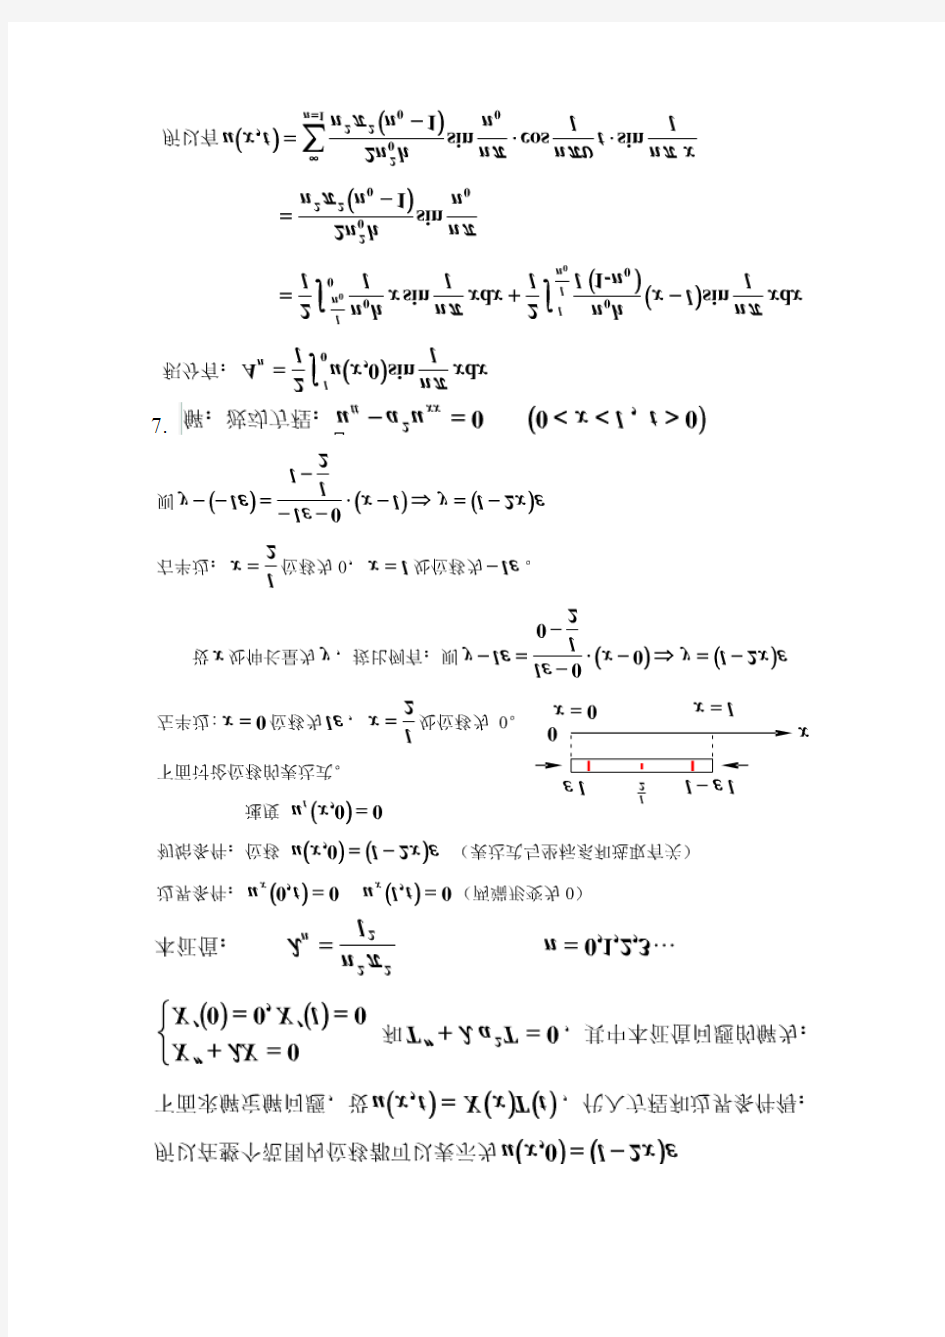 数学物理方法答案-刘连寿